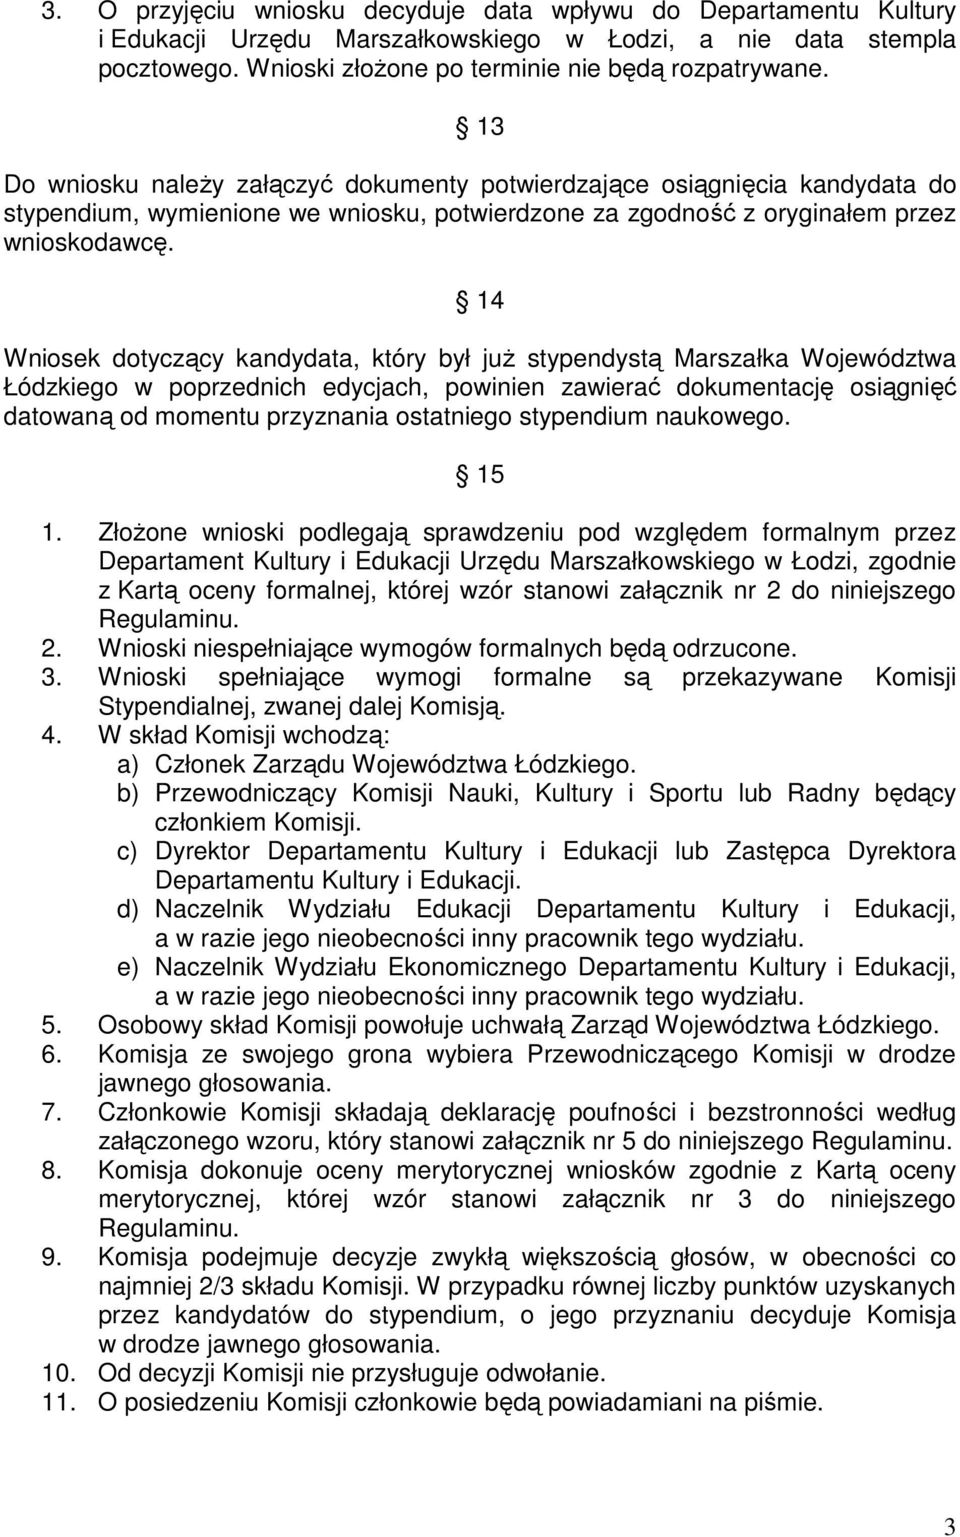 14 Wniosek dotyczący kandydata, który był już stypendystą Marszałka Województwa Łódzkiego w poprzednich edycjach, powinien zawierać dokumentację osiągnięć datowaną od momentu przyznania ostatniego